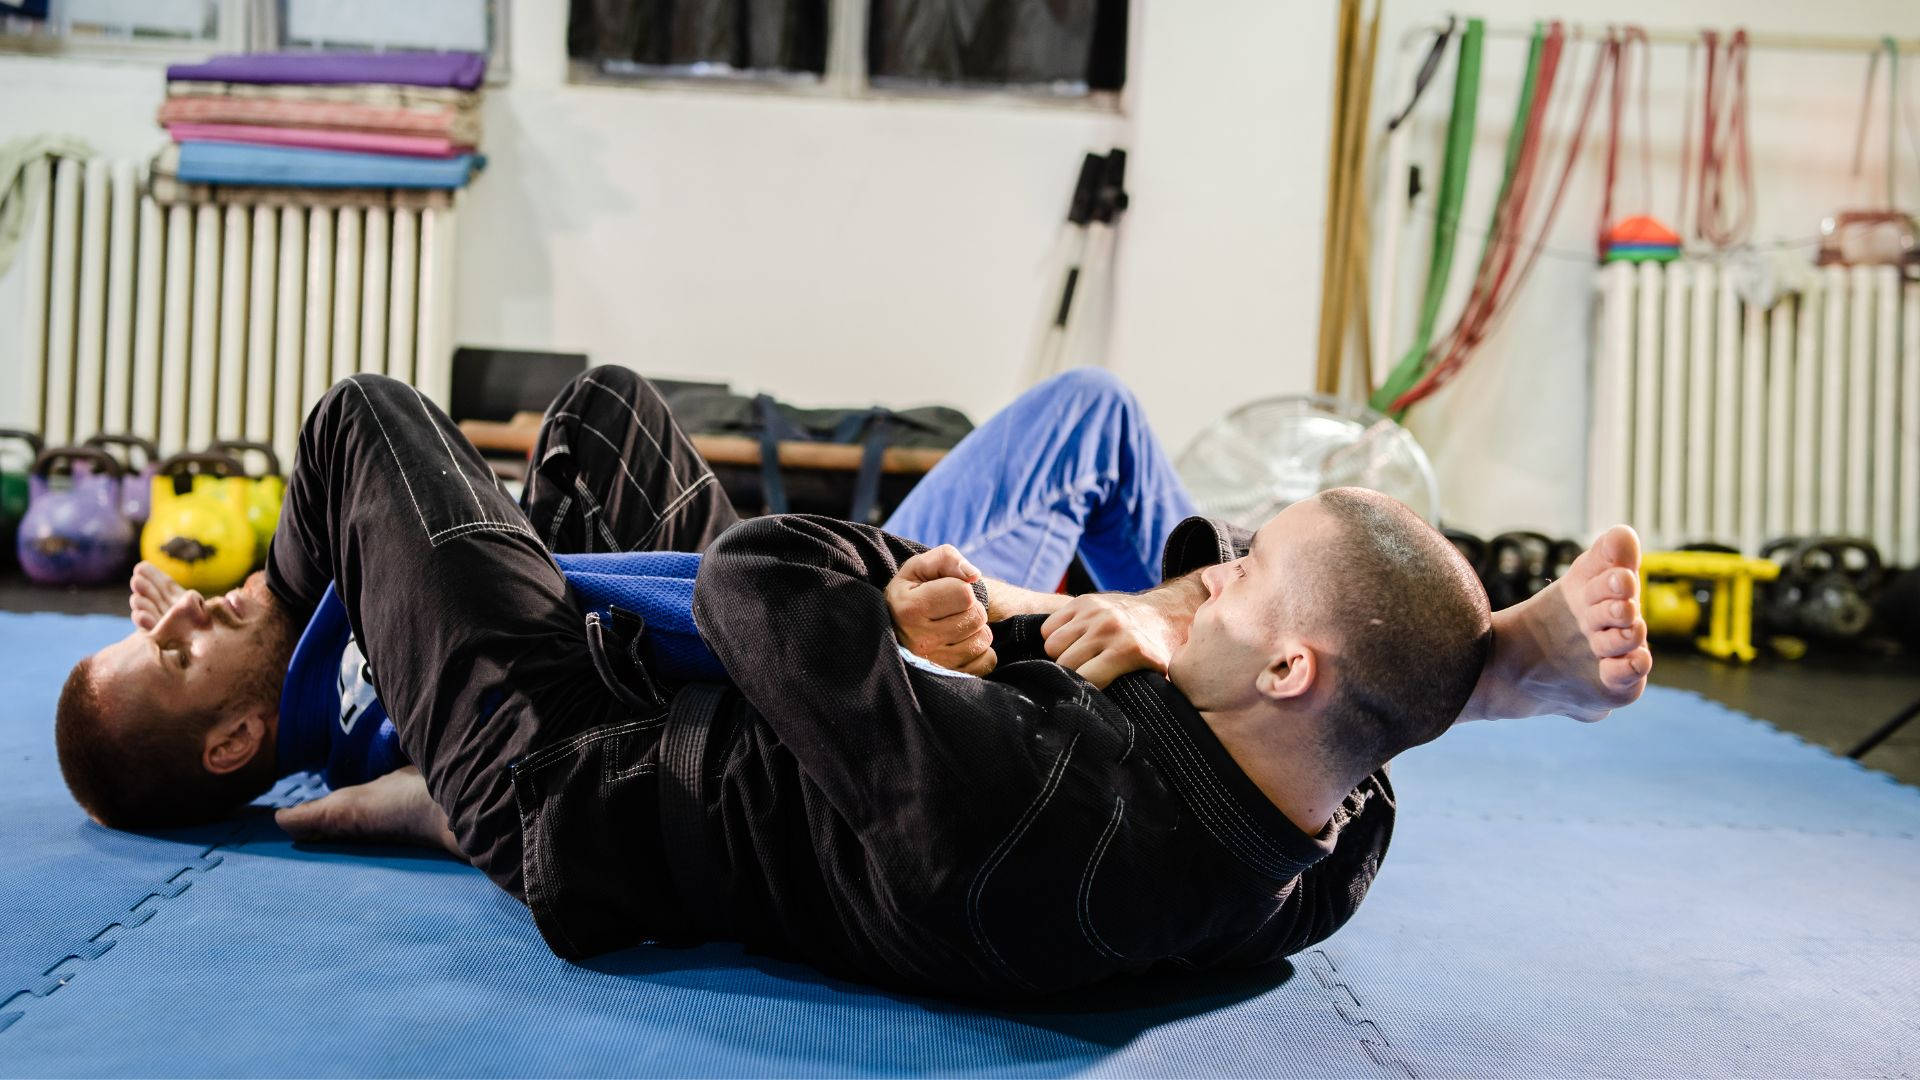 Intense Training In Brazilian Jiu-jitsu Background